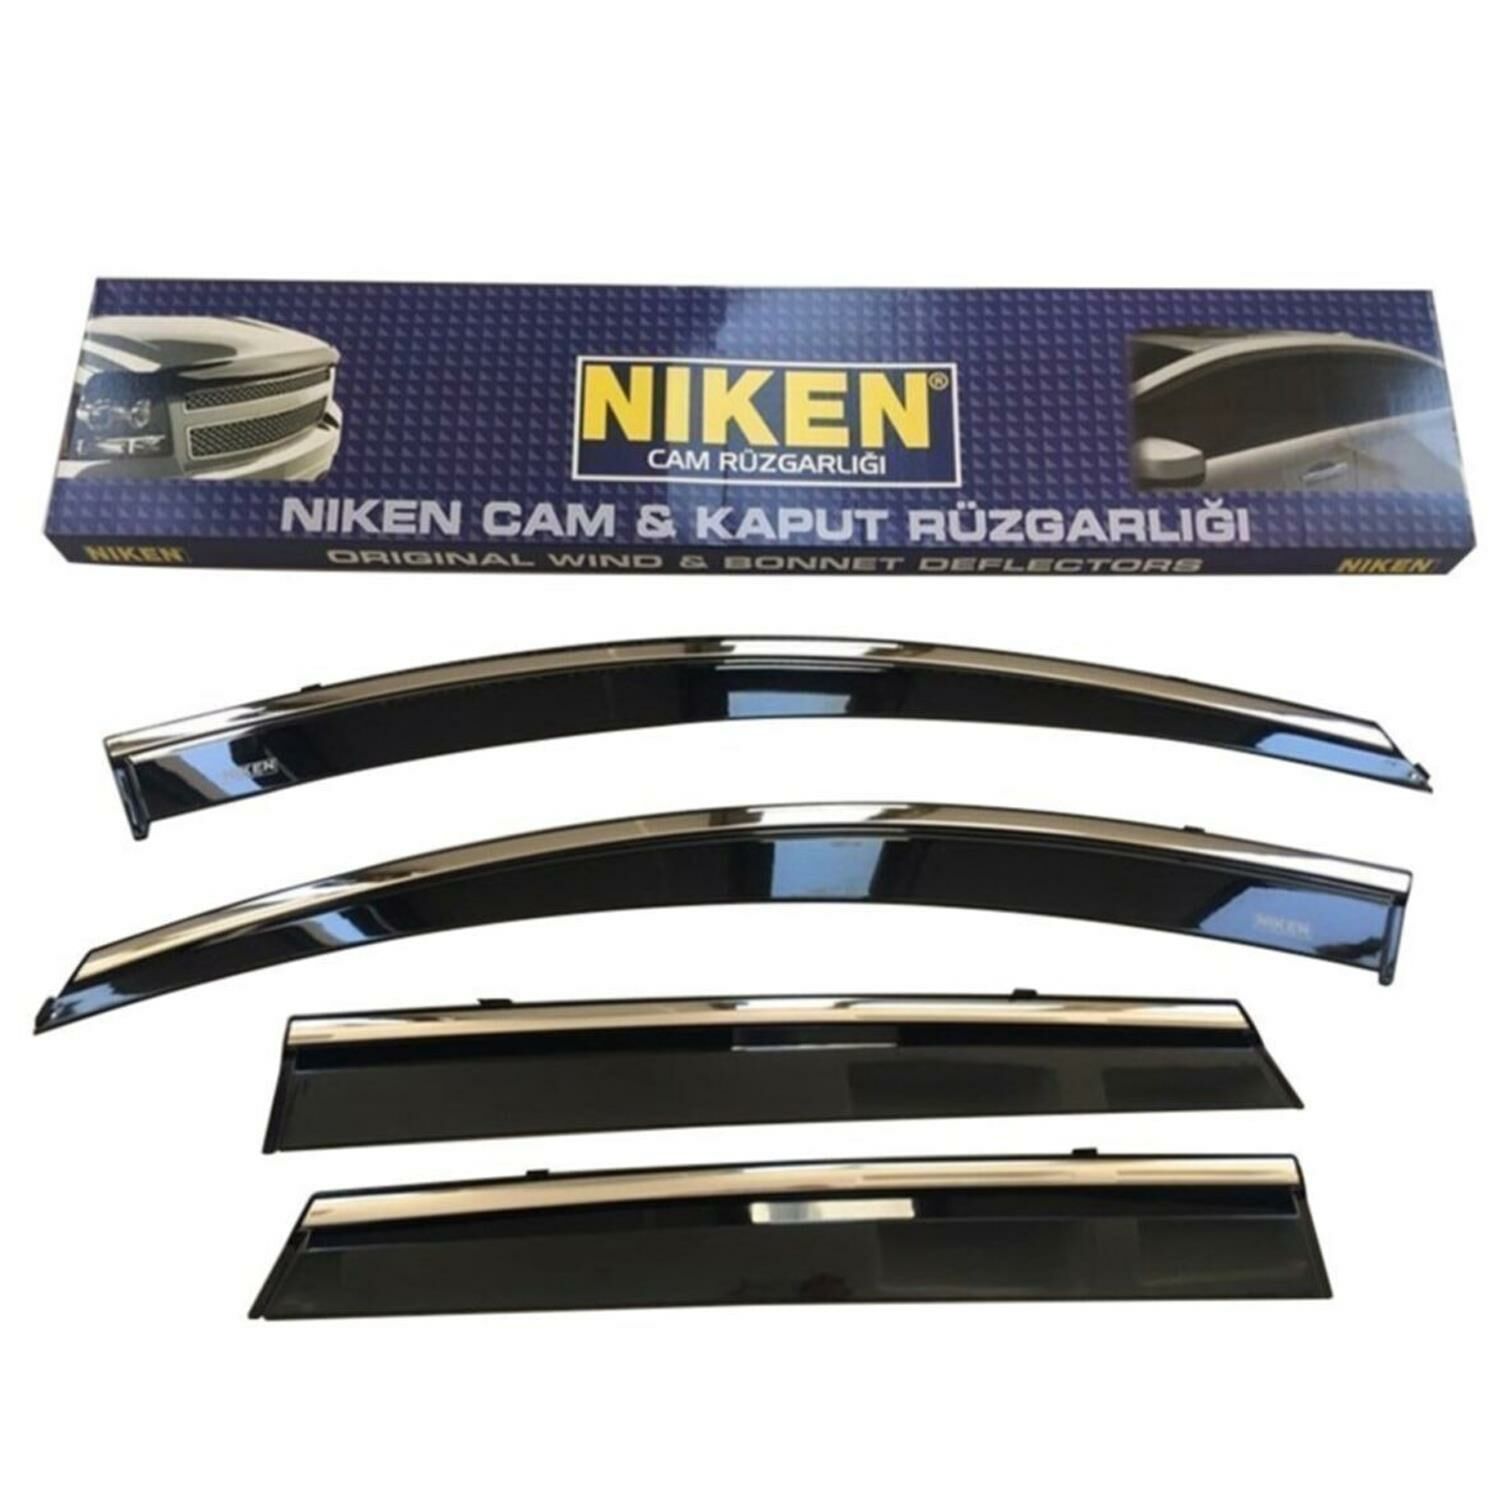 Niken Kromlu Cam Rüzgarlığı Chevrolet Cruze 2009-2014 ile uyumlu